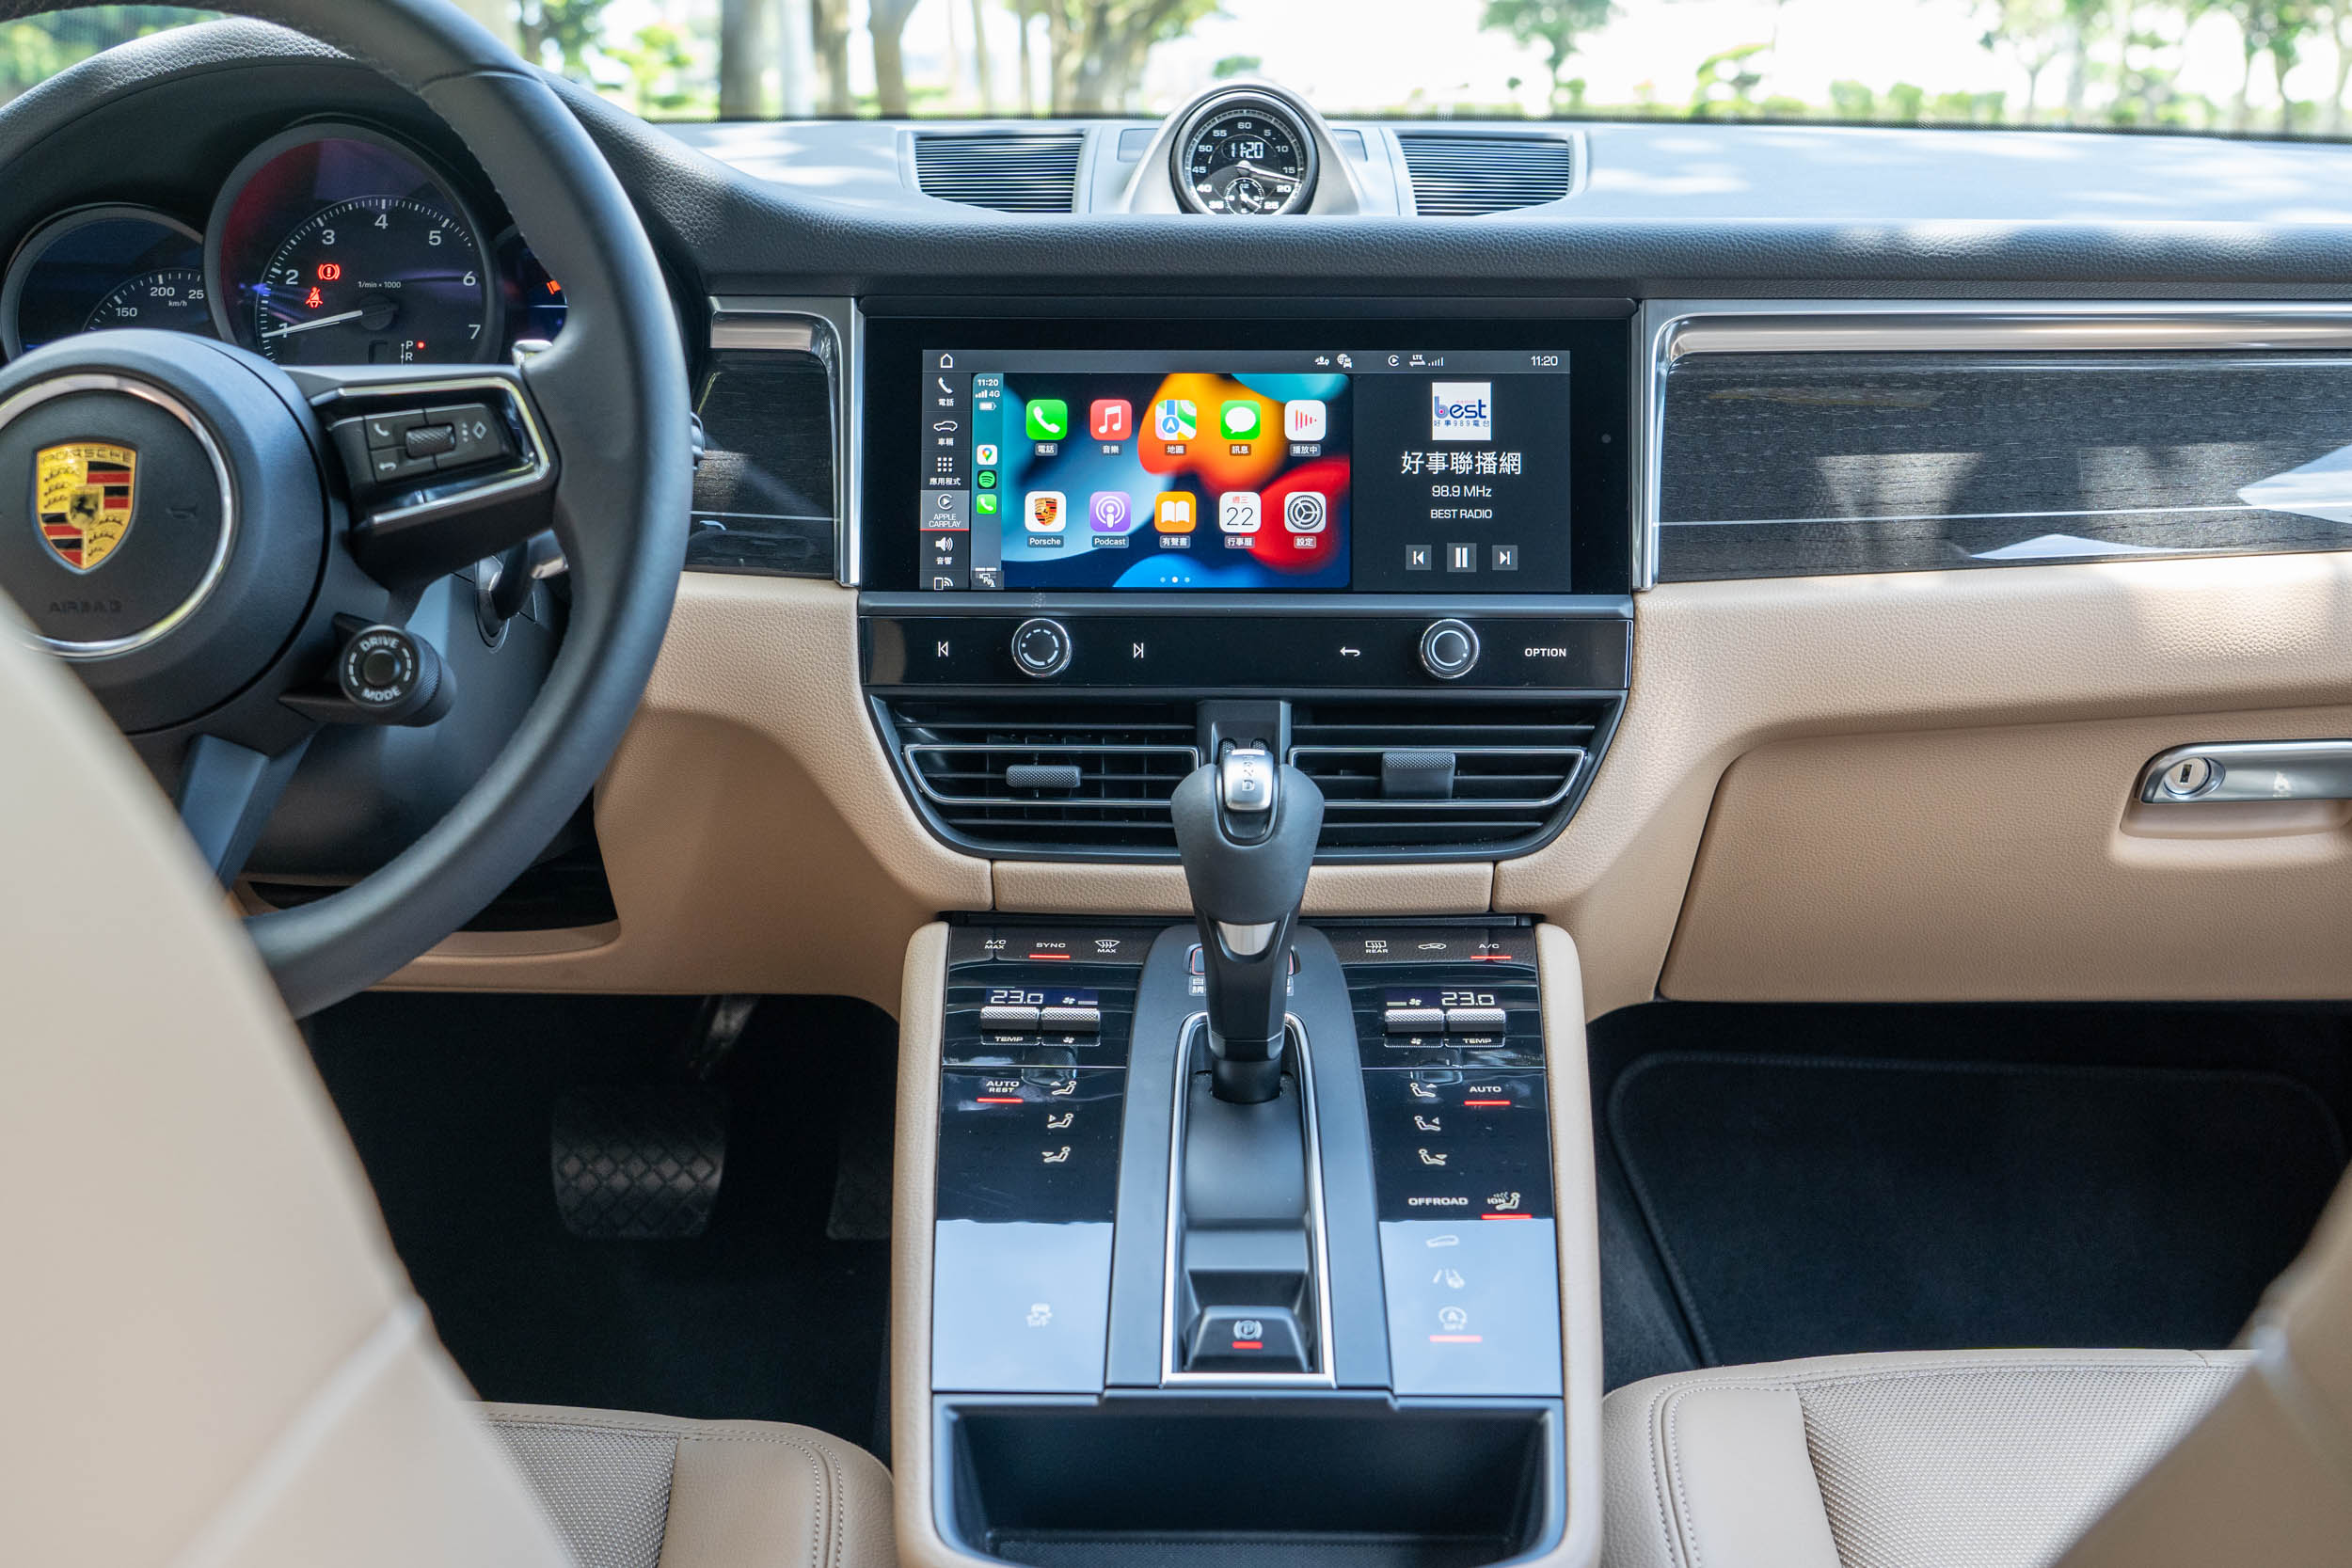 中控臺中央 10.9 吋的高解析度數位螢幕具備無線連接 Apple CarPlay 手機整合系統。